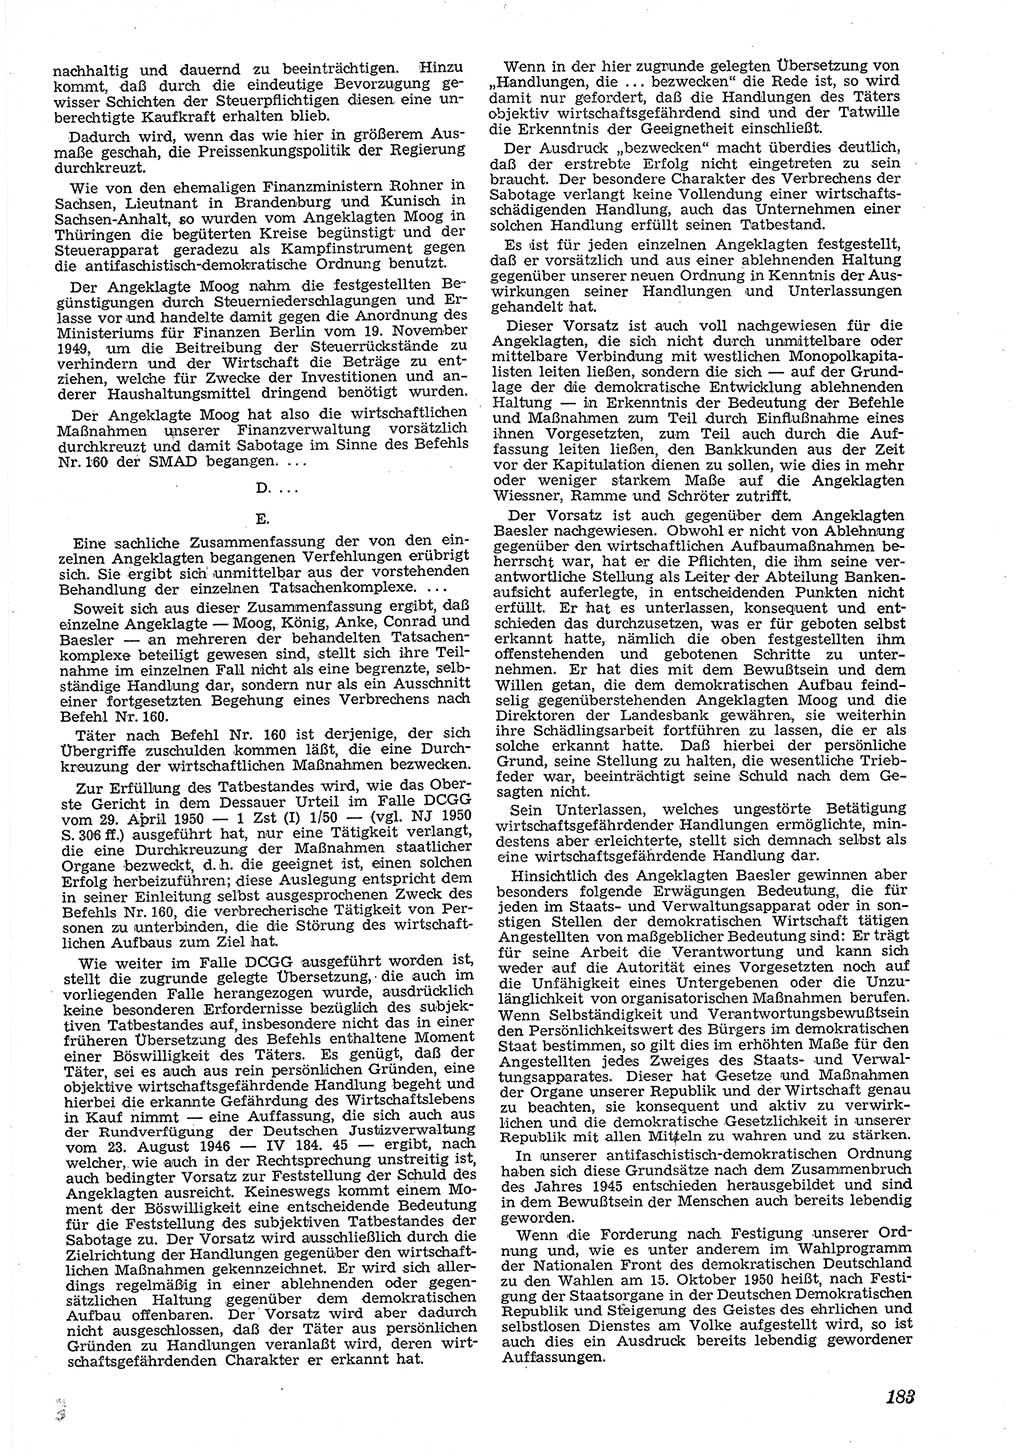 Neue Justiz (NJ), Zeitschrift für Recht und Rechtswissenschaft [Deutsche Demokratische Republik (DDR)], 5. Jahrgang 1951, Seite 183 (NJ DDR 1951, S. 183)